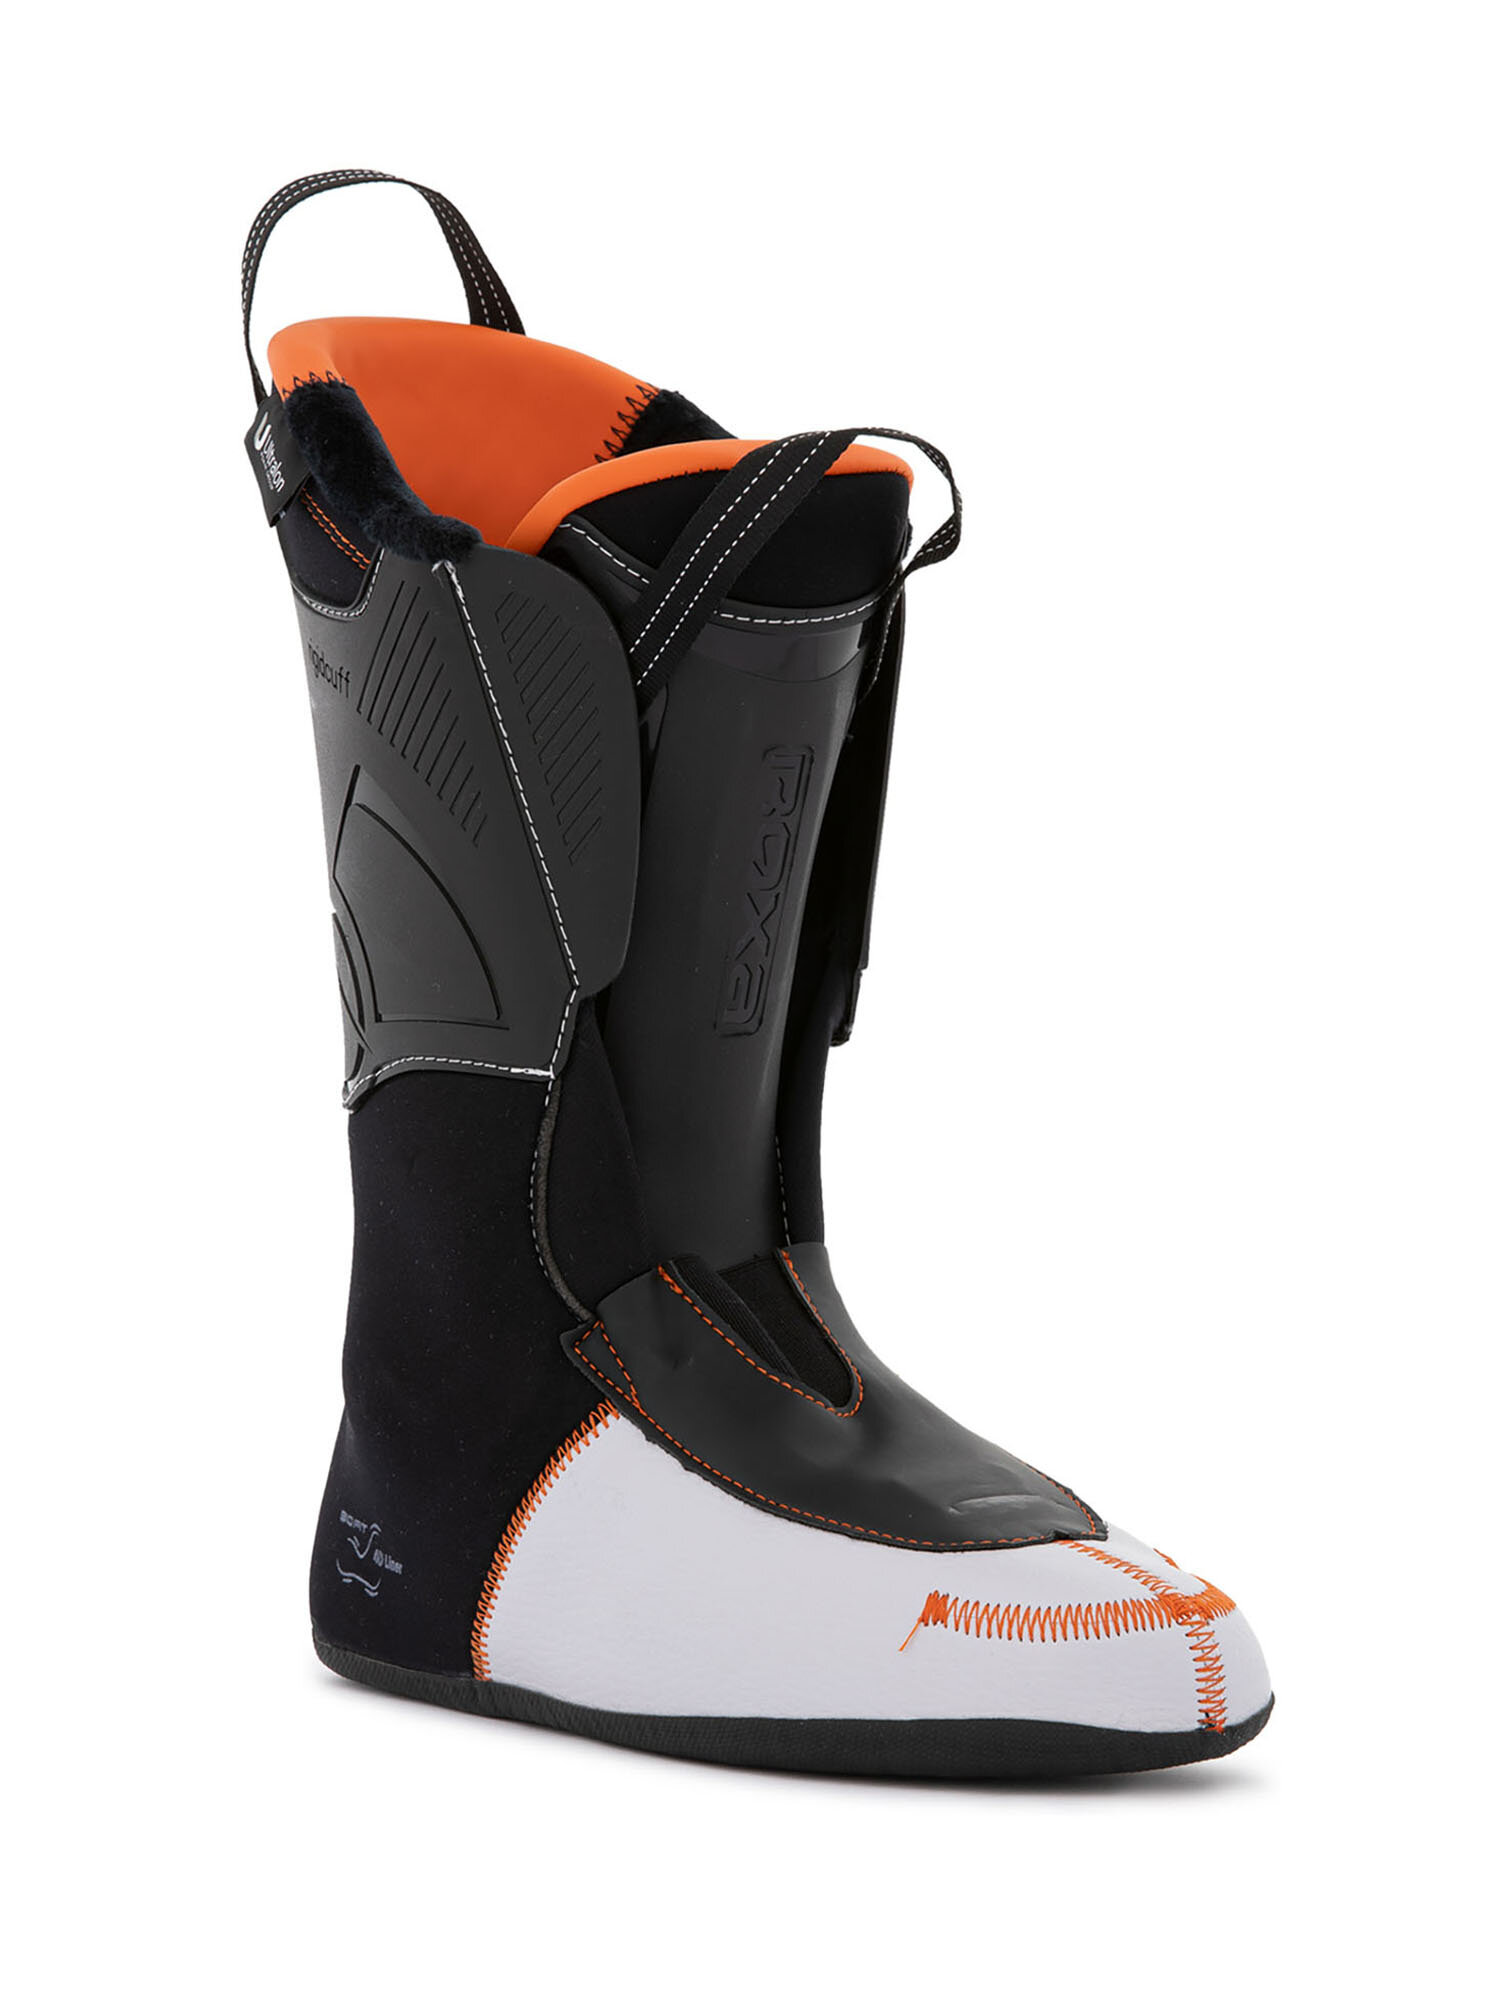 Горнолыжные ботинки ROXA Rfit Pro 120 Gw Dk Grey/Orange (см:29,5)